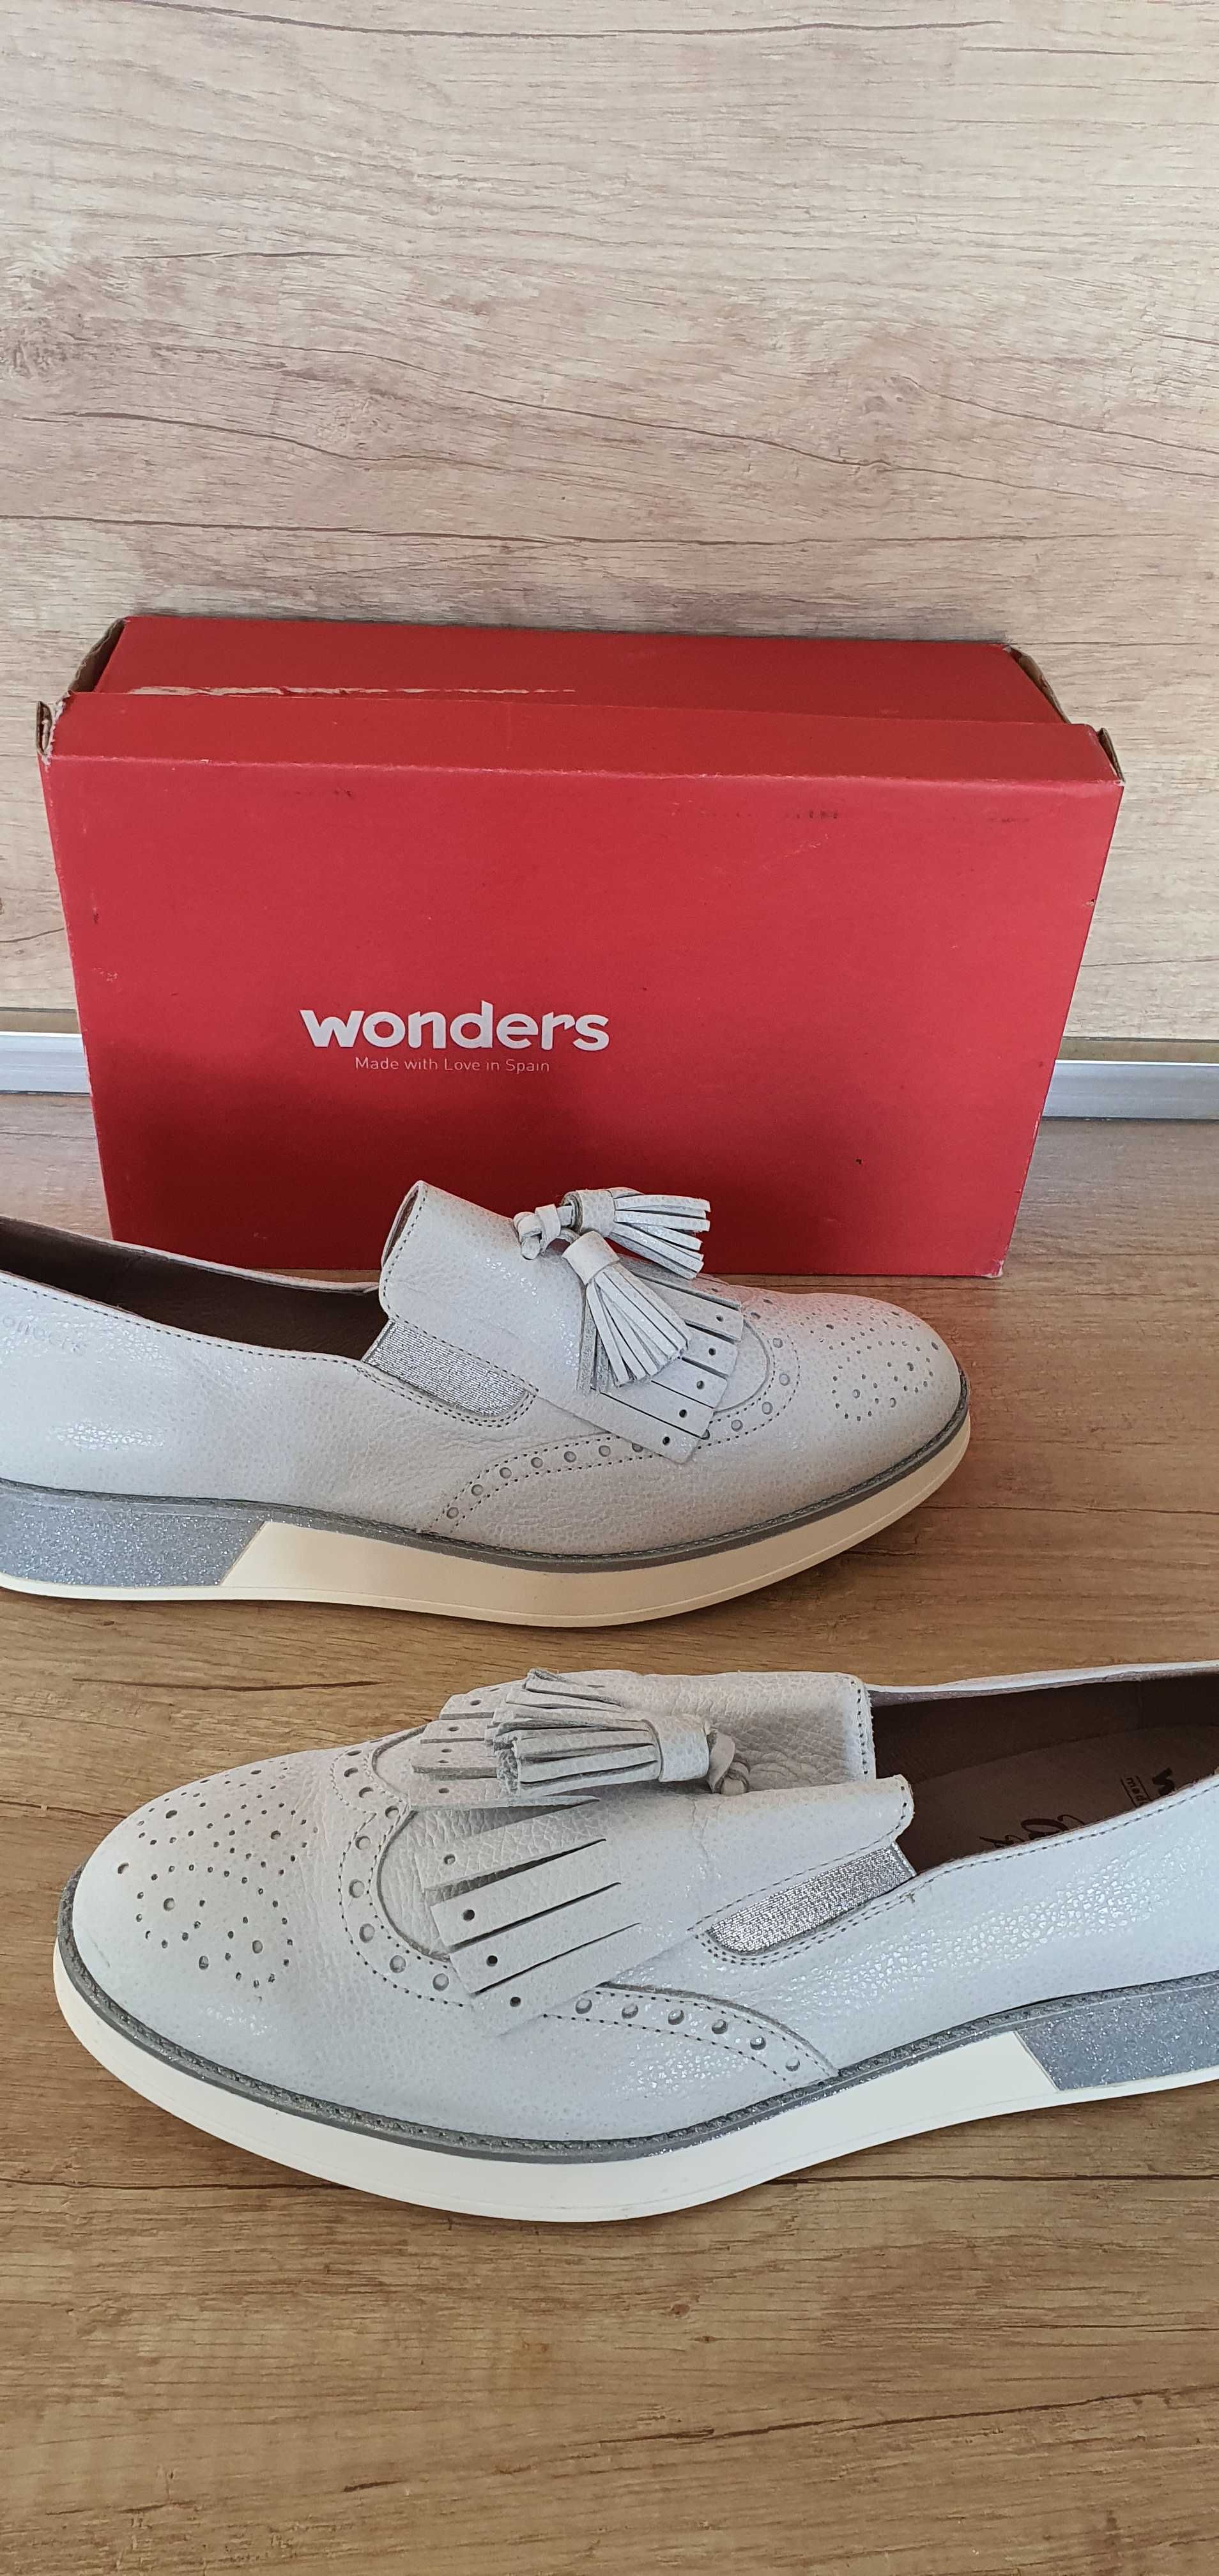 Дамски обувки от естествена кожа "Wonders",произведени в Испания.НОВИ